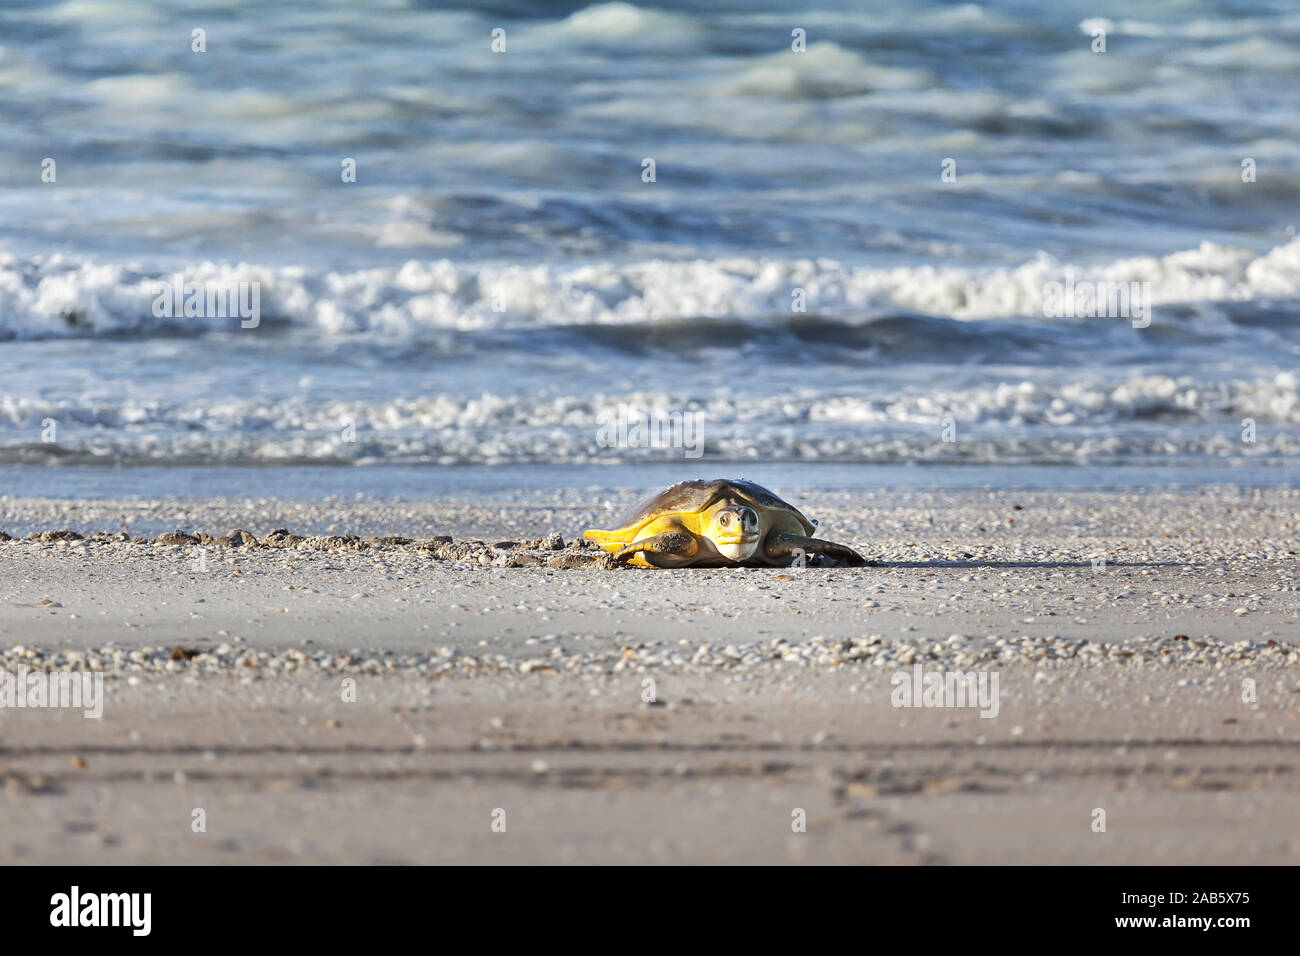 Eine Schildkroete am 80-Meilen-Strand in Australien Foto Stock